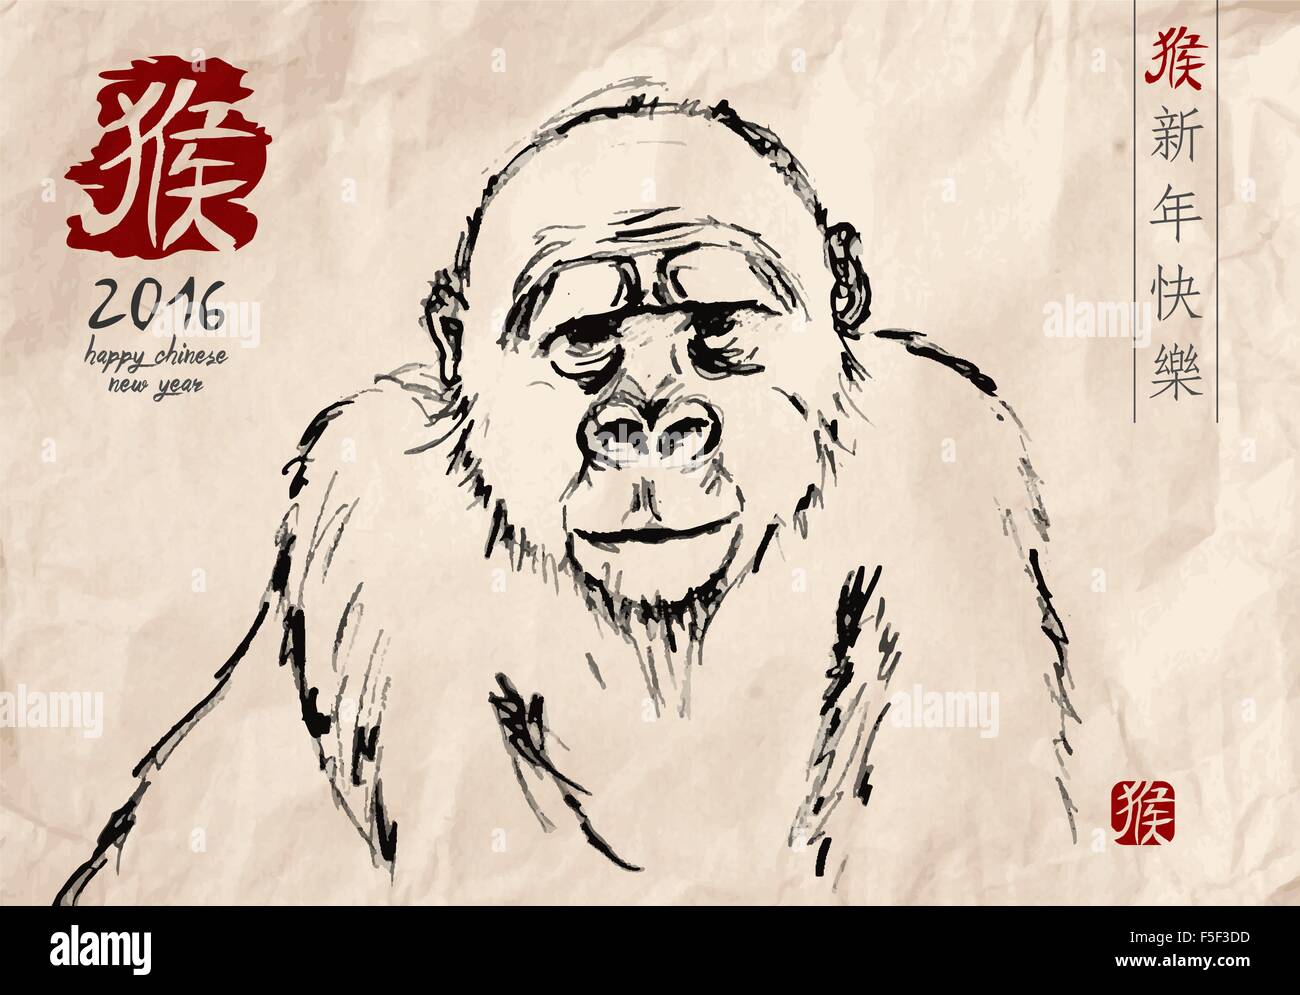 2016 Happy Chinese New Year der Affe Hand gezeichnet Gorilla im traditionellen Stil auf strukturiertem Papier. EPS10 Vektor. Stock Vektor